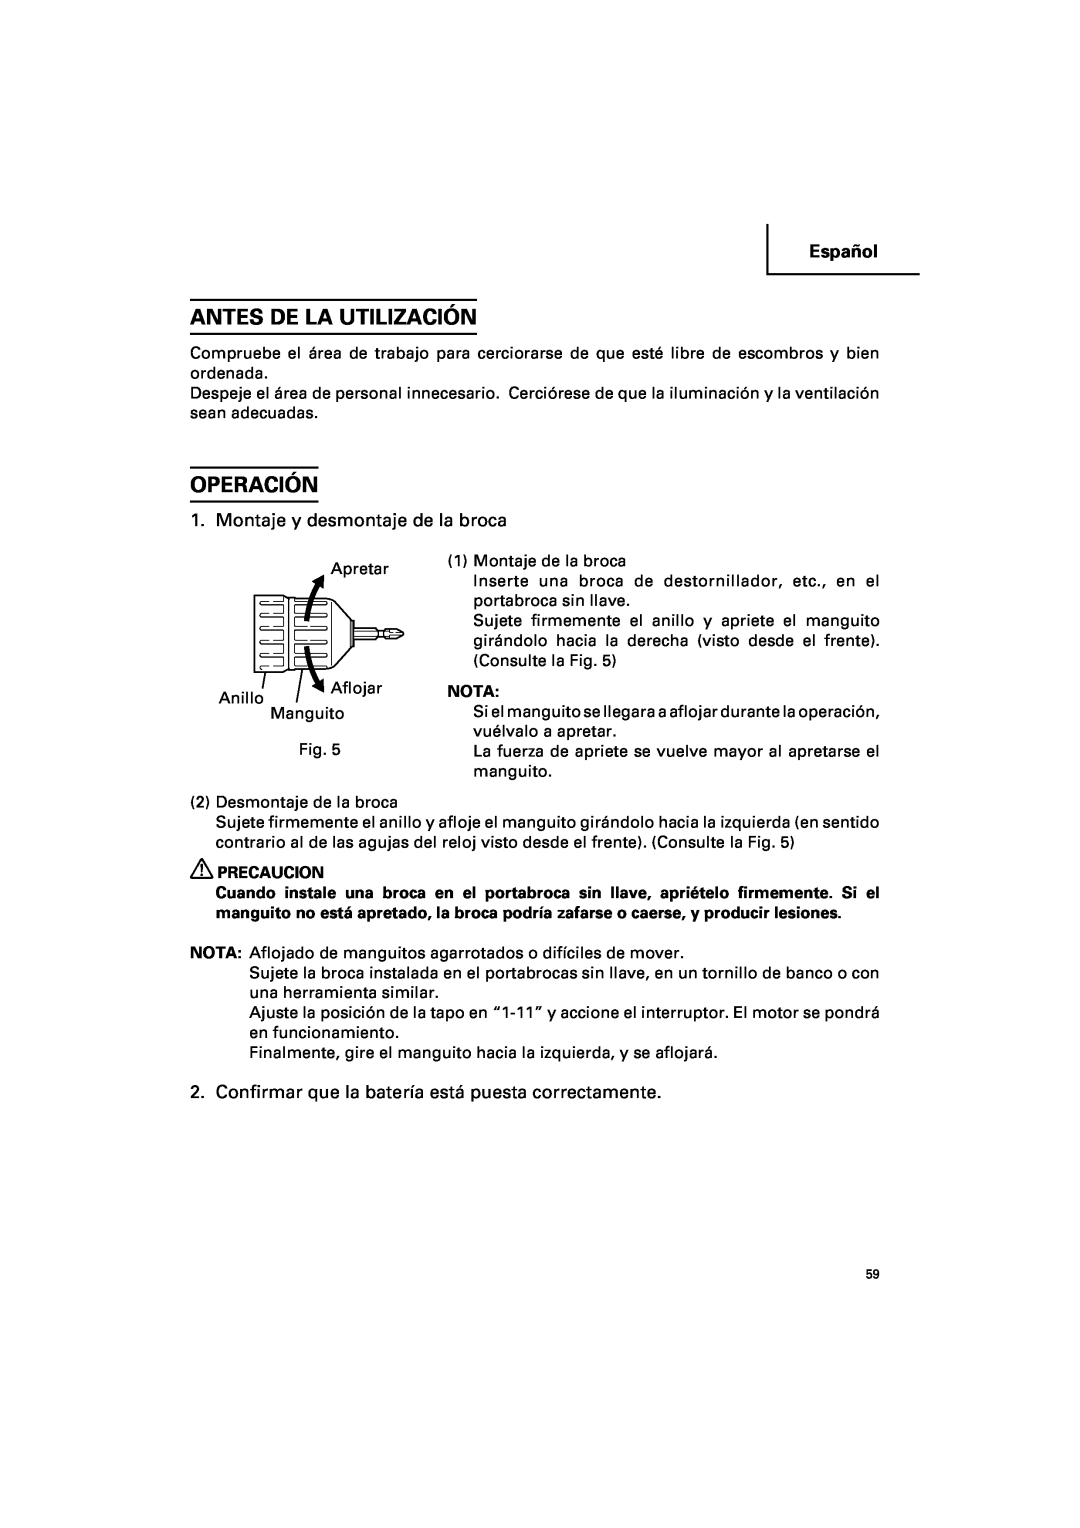 Hitachi DV 14DV, DV 18DV instruction manual Antes De La Utilización, Operación, Montaje y desmontaje de la broca, Español 